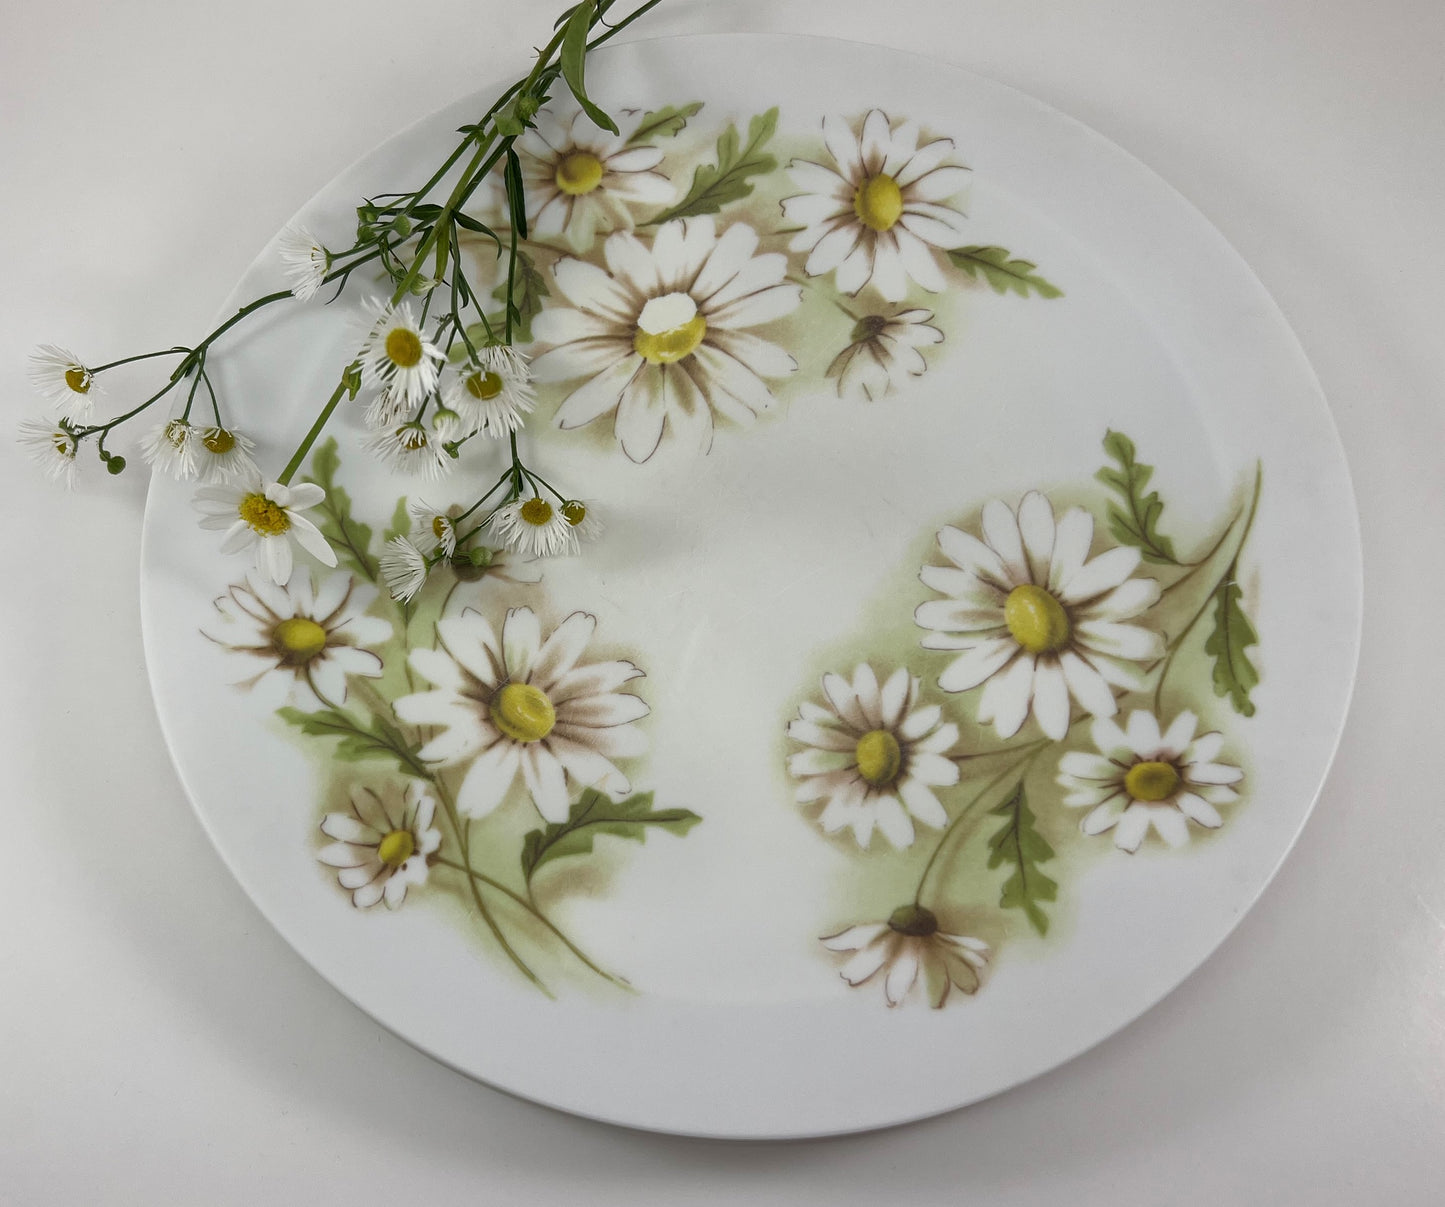 Melamine Daisy Plates, Set of Three, 1960s